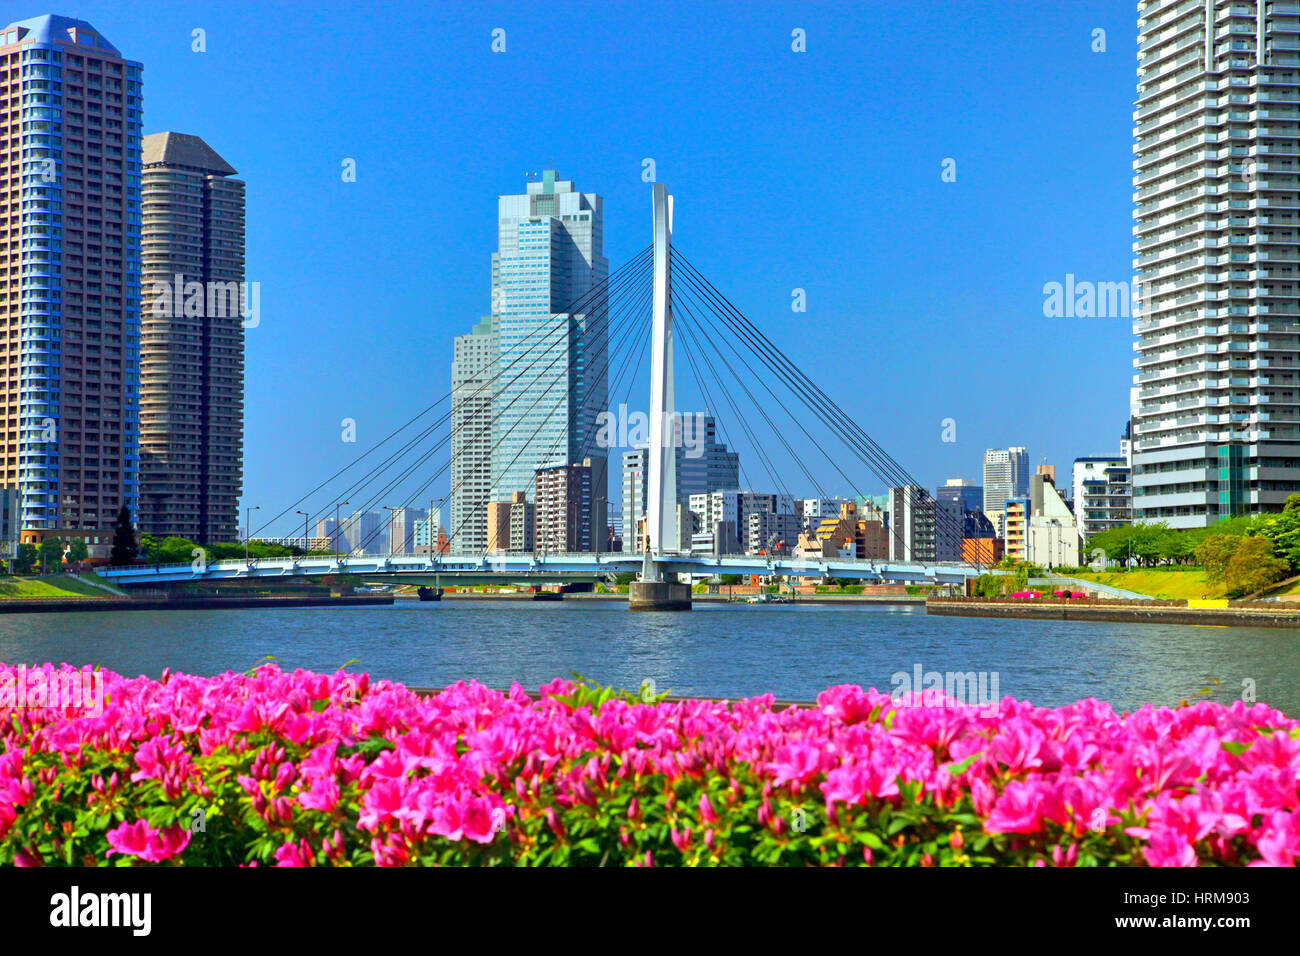 River City 21 vue depuis la rivière Sumida Tokyo Japon Banque D'Images